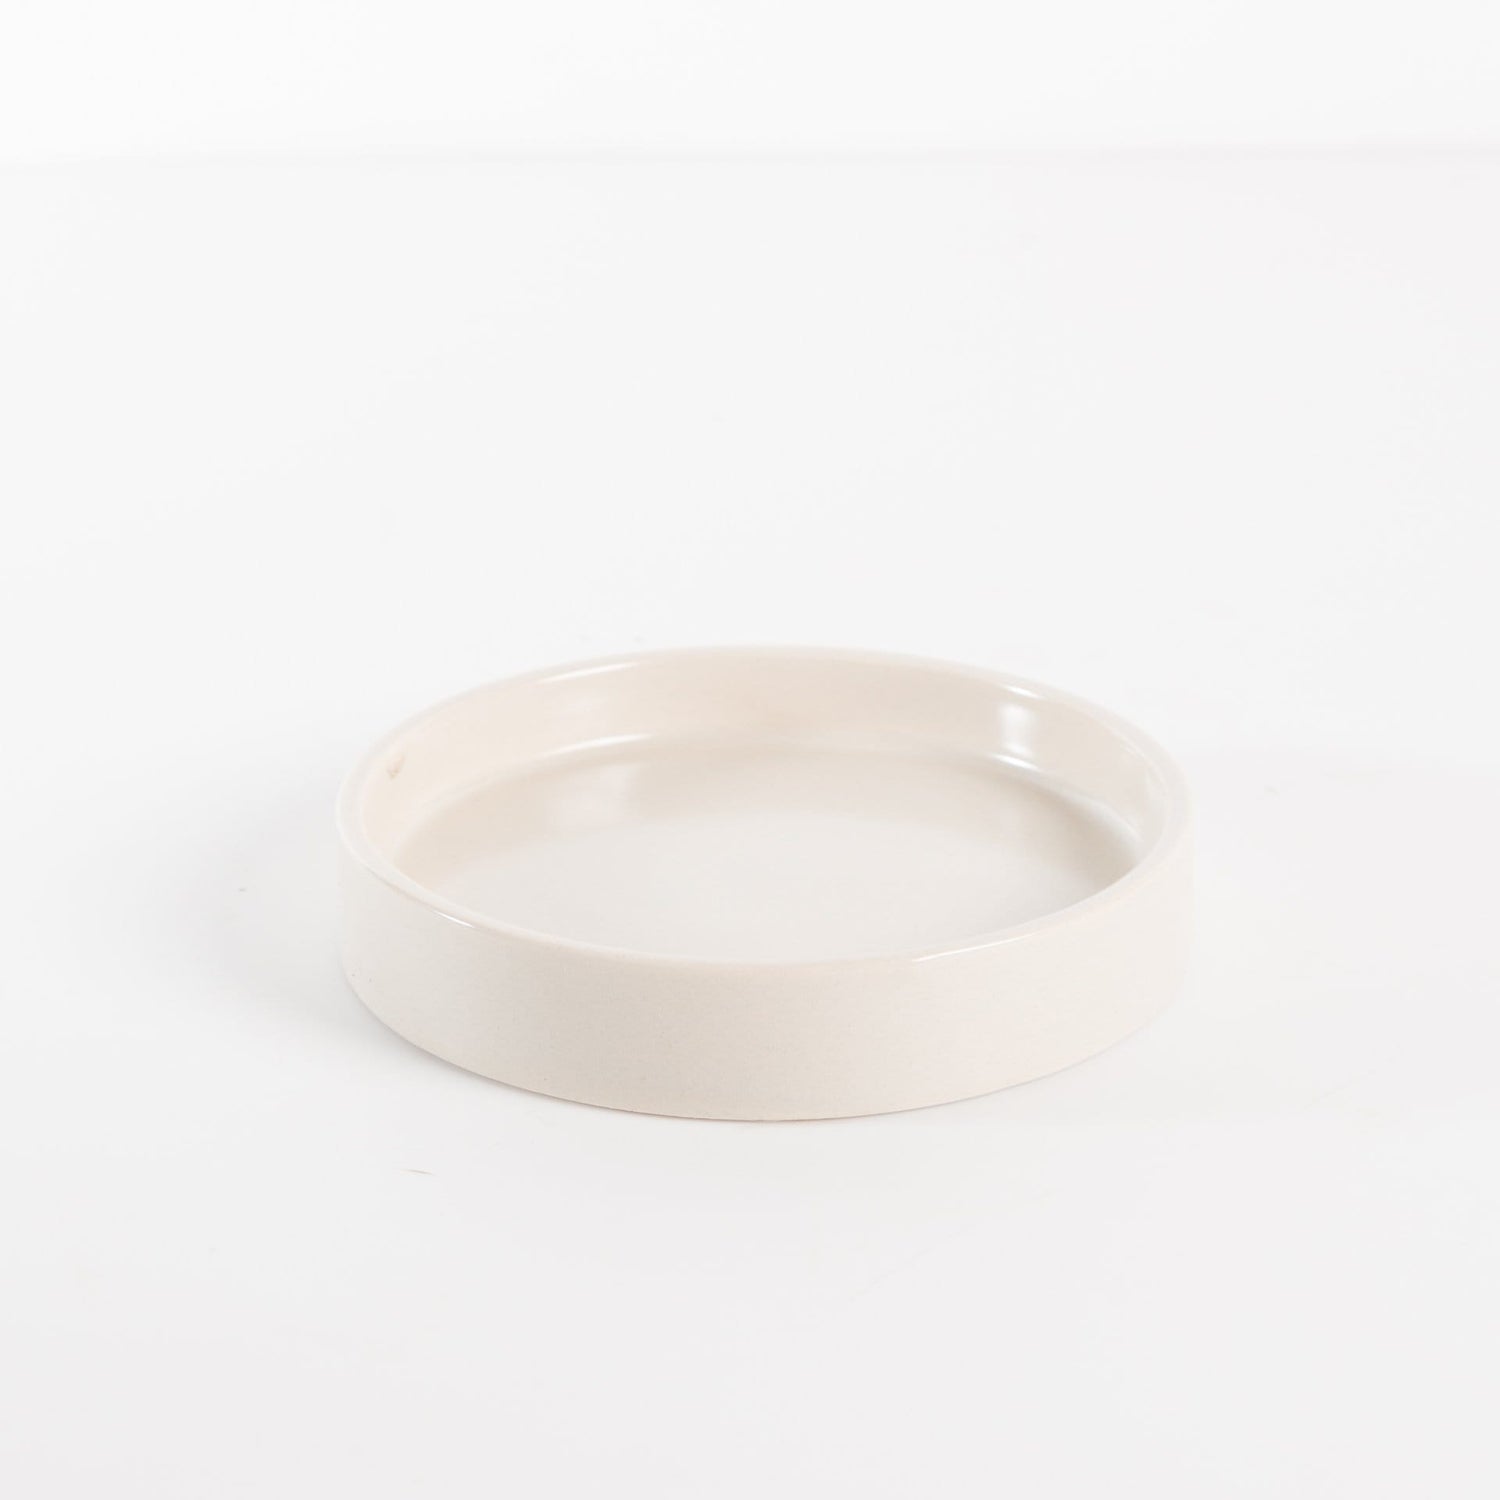 Washington Pottery Company Saucer 4.5" / Cream Essential Saucer